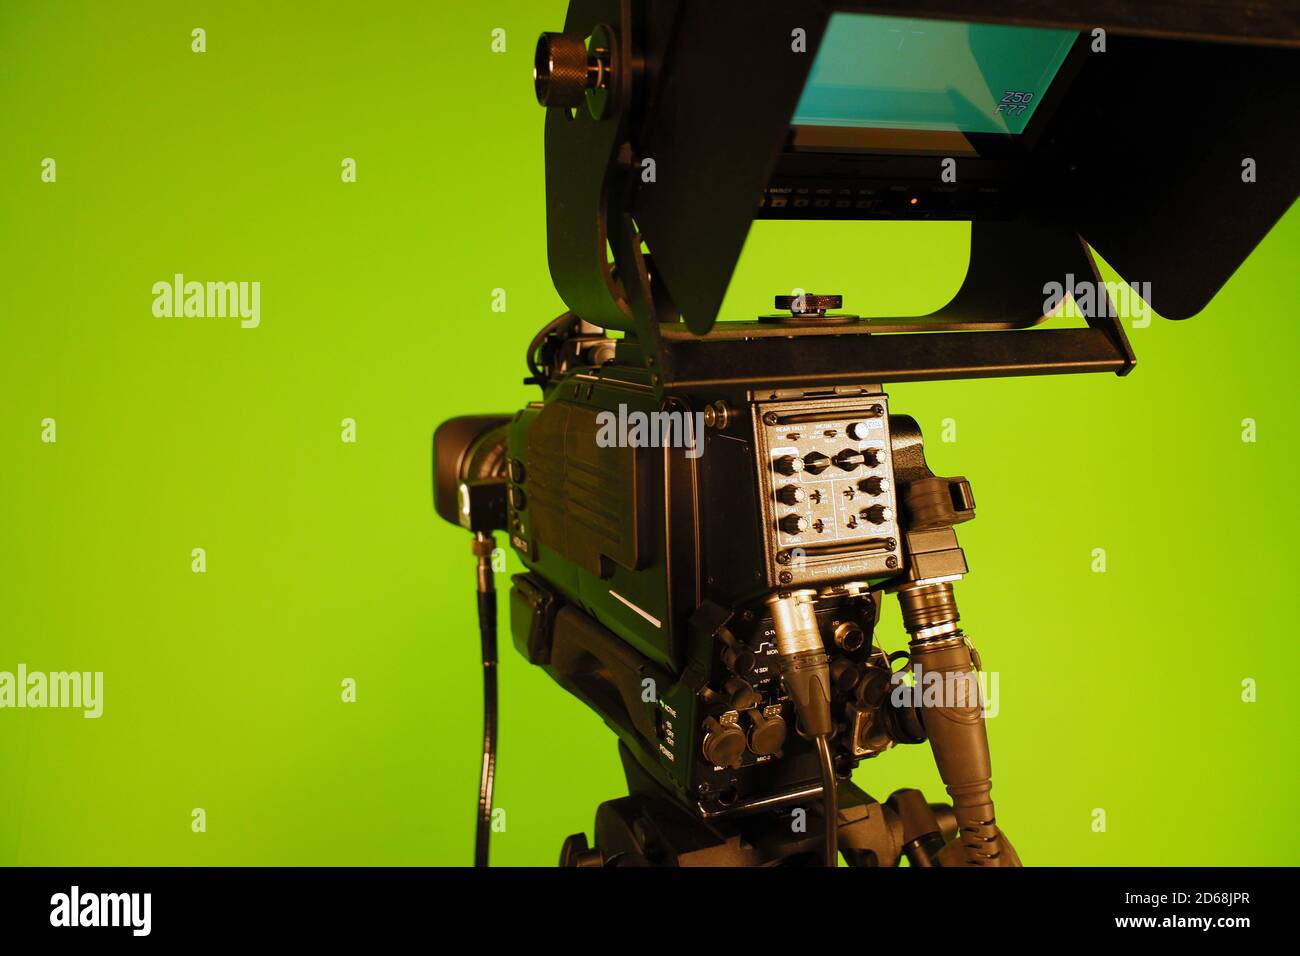 TV-Videokamera auf dem Hintergrund einer grünen Chroma-Taste. Camcorder-Objektiv Stockfoto